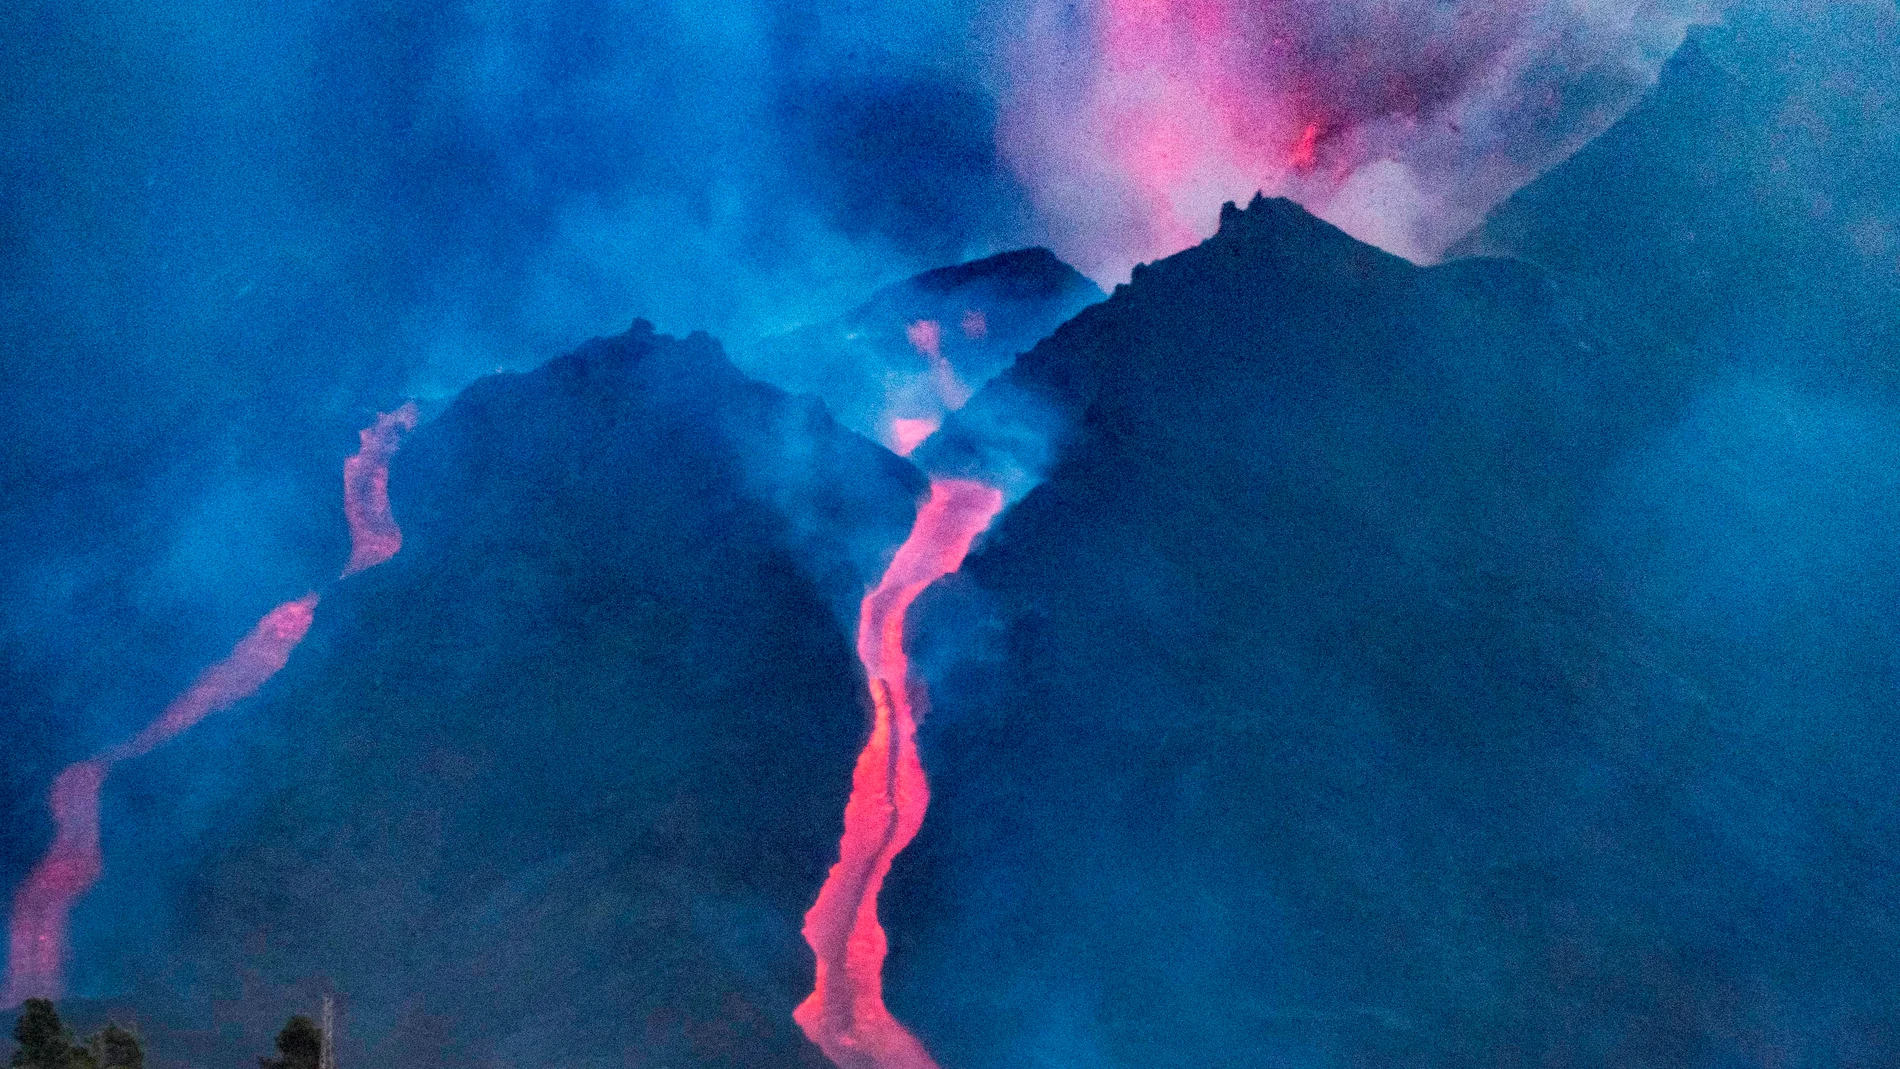 El volcán no da tregua y la pasada noche se produjo la caida parcial de su cono, emitiendo grandes cantidades de lava. La nueva colada de lava está generando una tremenda destrucción a su paso y dificultando el movimiento de los científicos en la zona, ha advertido este sábado el Instituto Volcanológico de Canarias (Involcan).